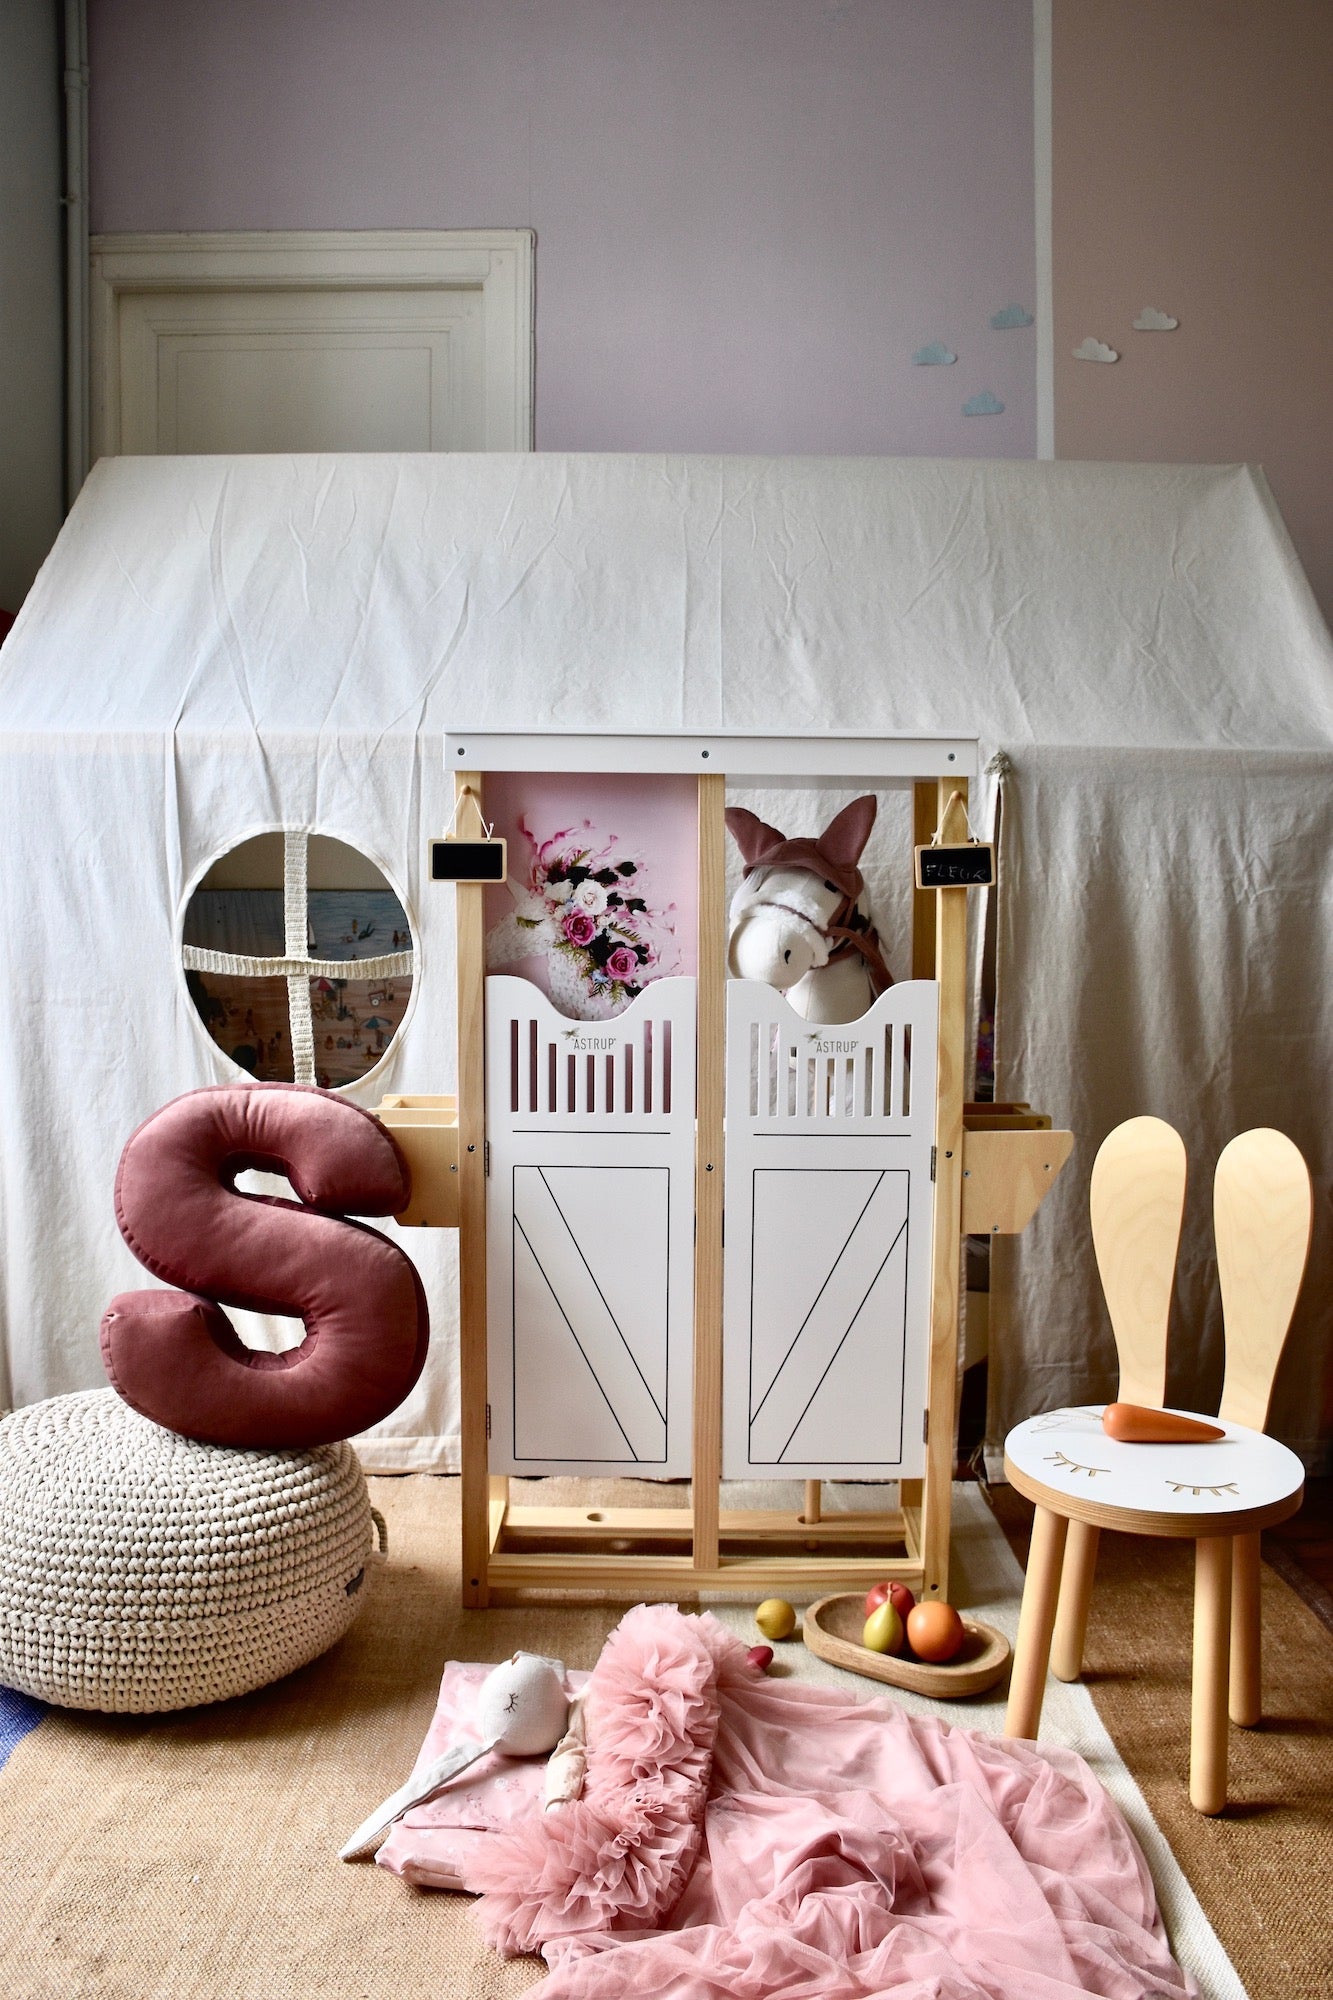 Poduszka literka welurowa S różowa od Bettys Home w pokoiku dziecięcym przed namiotem